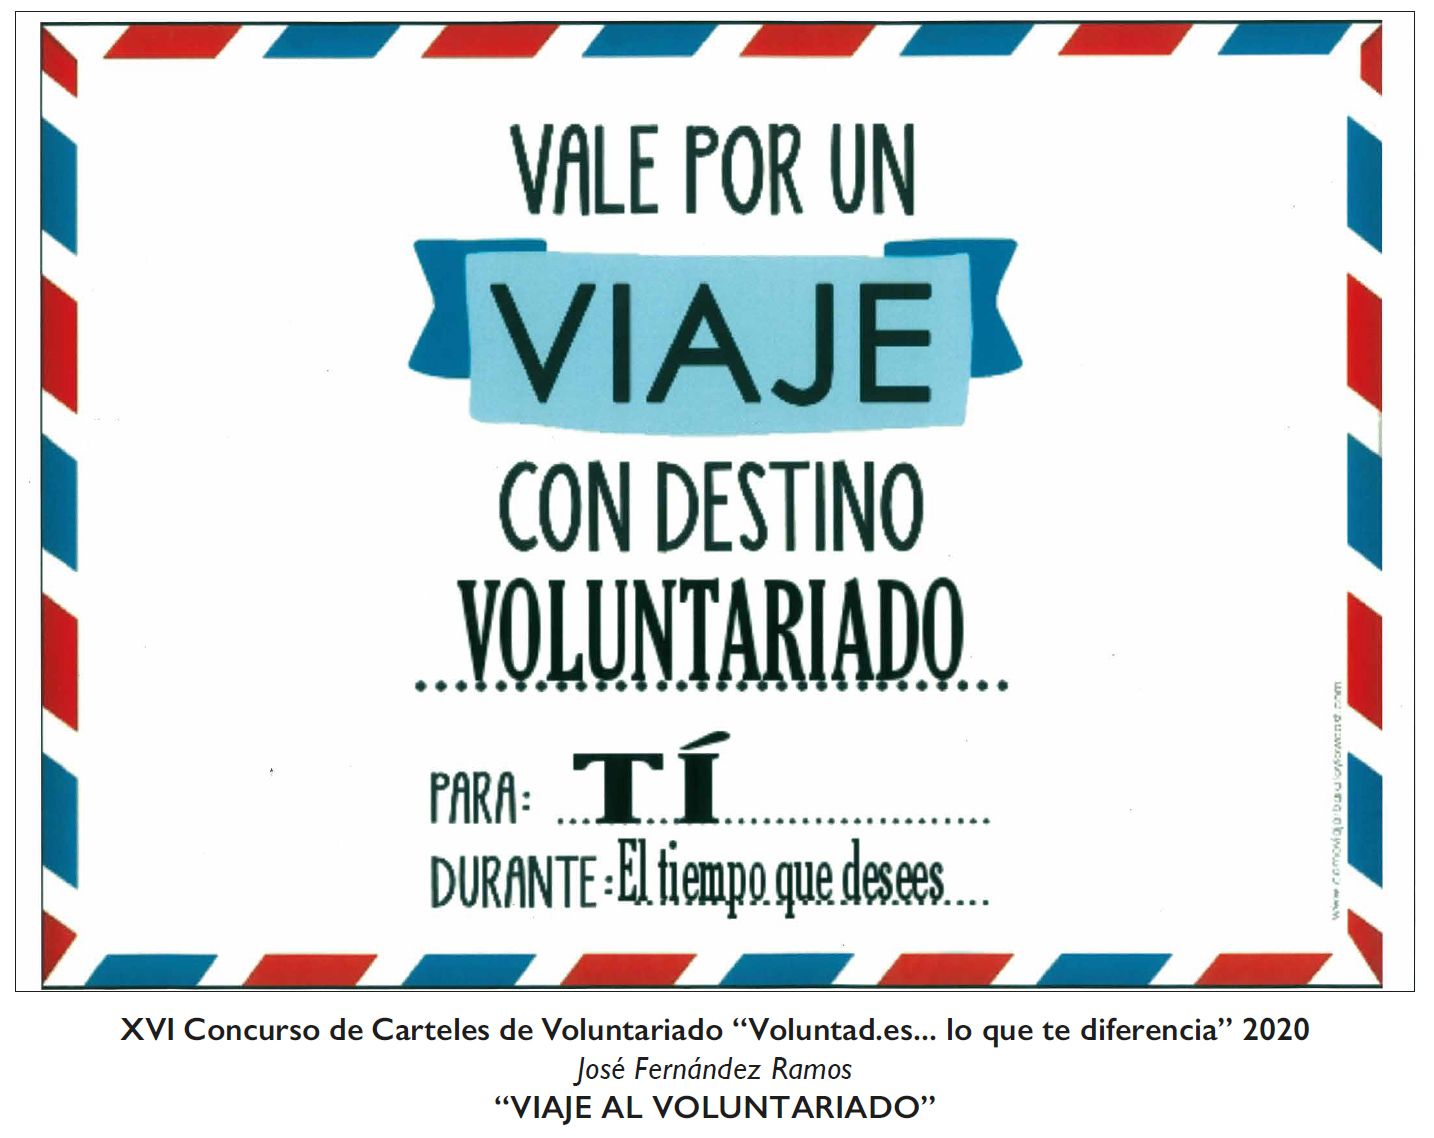 Carteles ganadores del concurso entre estudiantes asturianos por el Día Internacional del Voluntariado